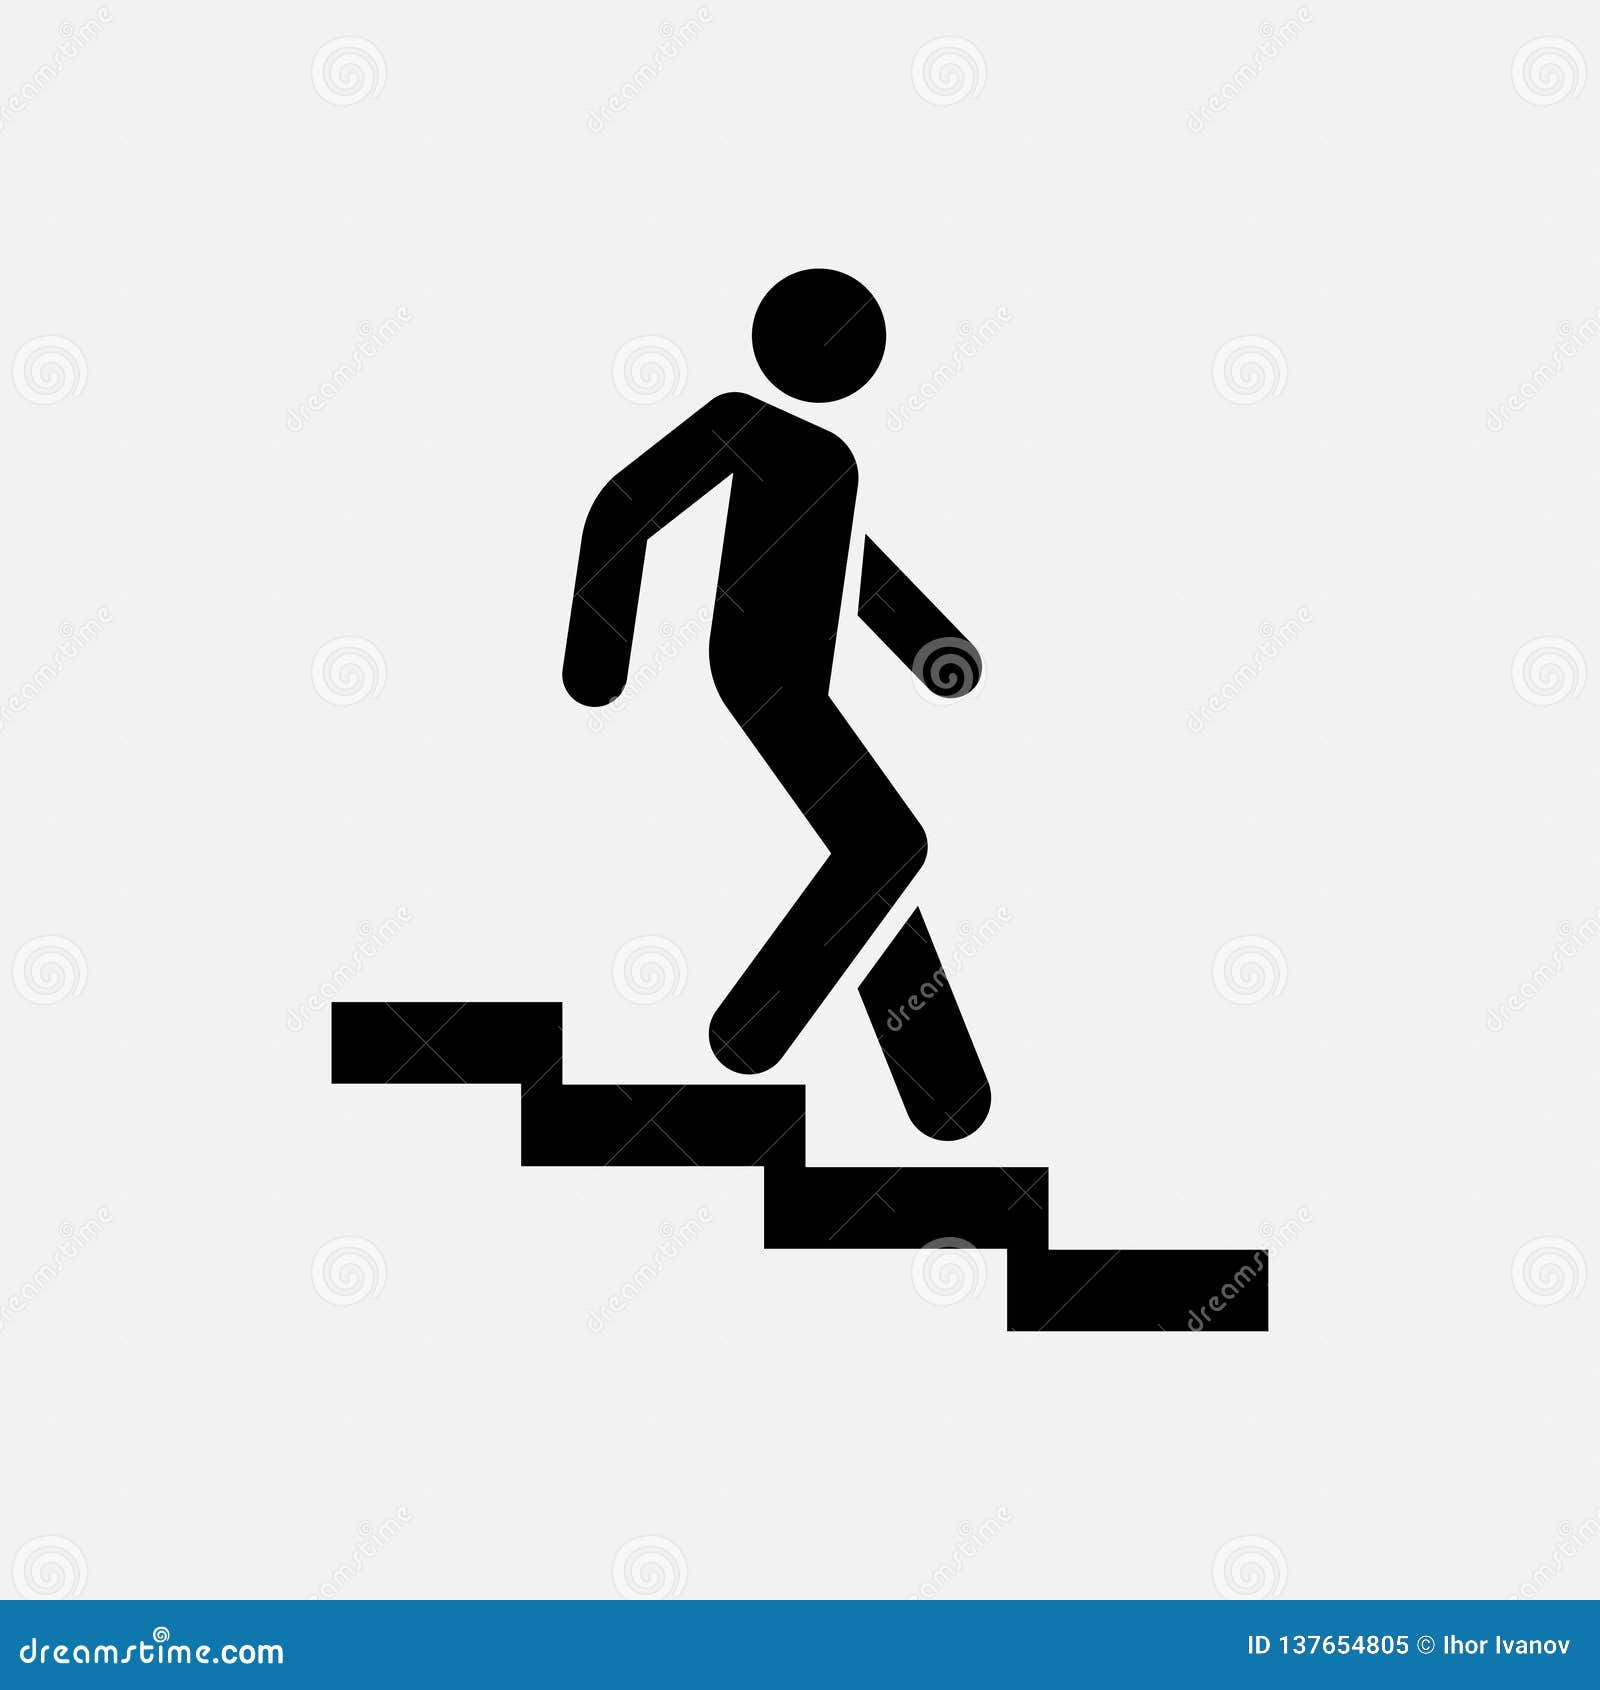 Не толкать впереди идущих по лестнице. Знак человек на лестнице. Пиктограмма спуск по лестнице. Человечек спускается по лестнице. Табличка лестница вниз.